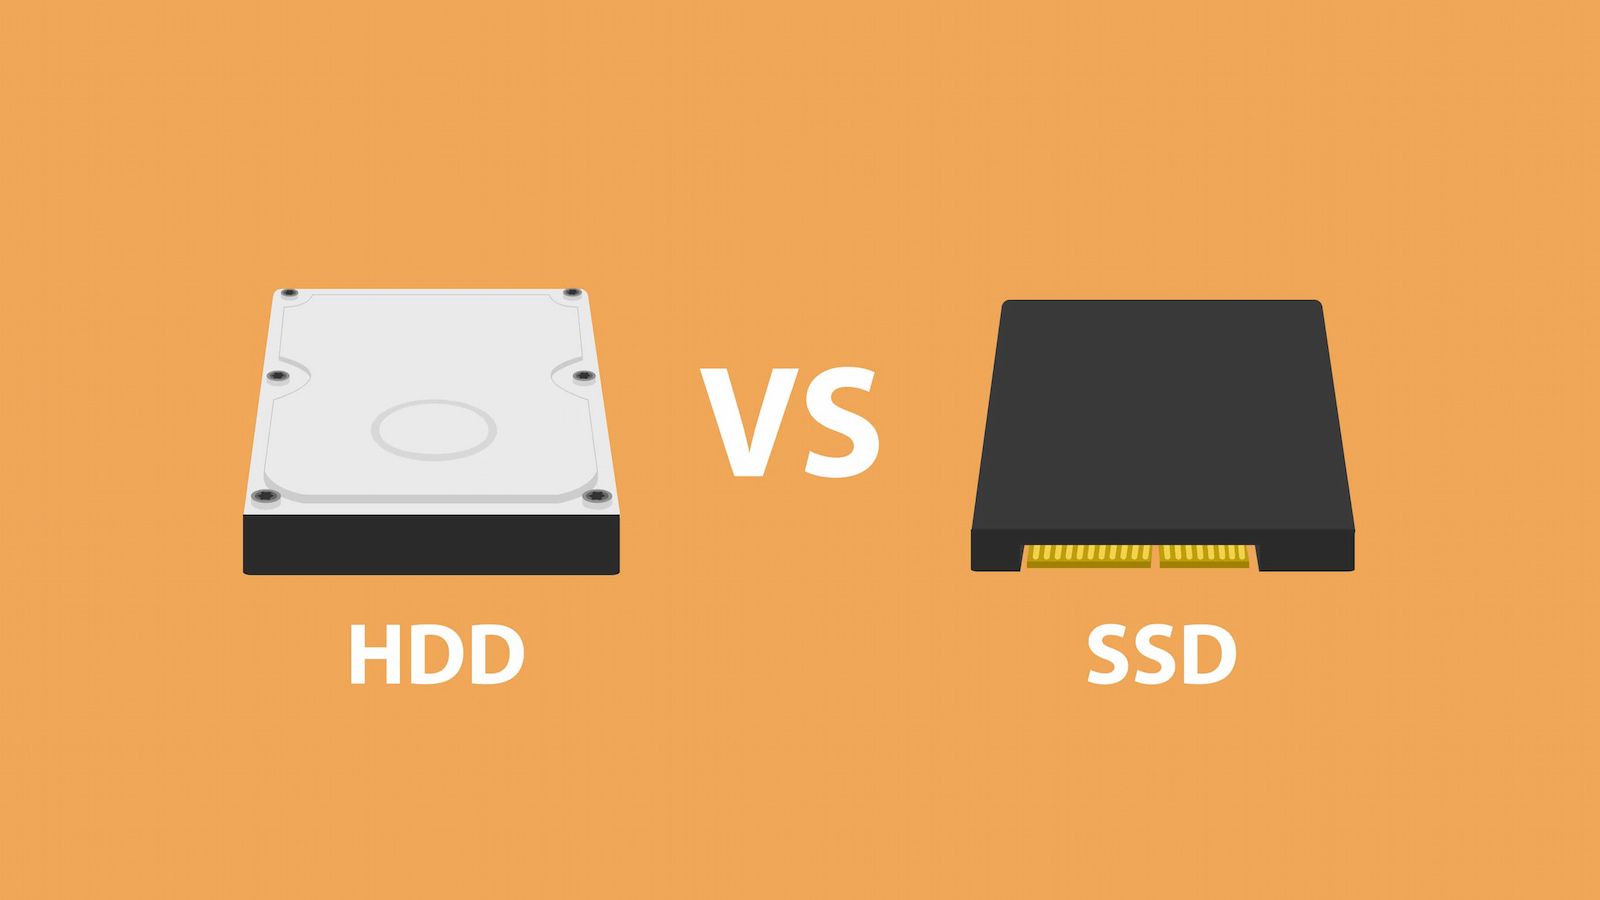 فرق ssd و hdd در چیست؟ کدامیک ارزش خرید دارد؟ - تکنولایف